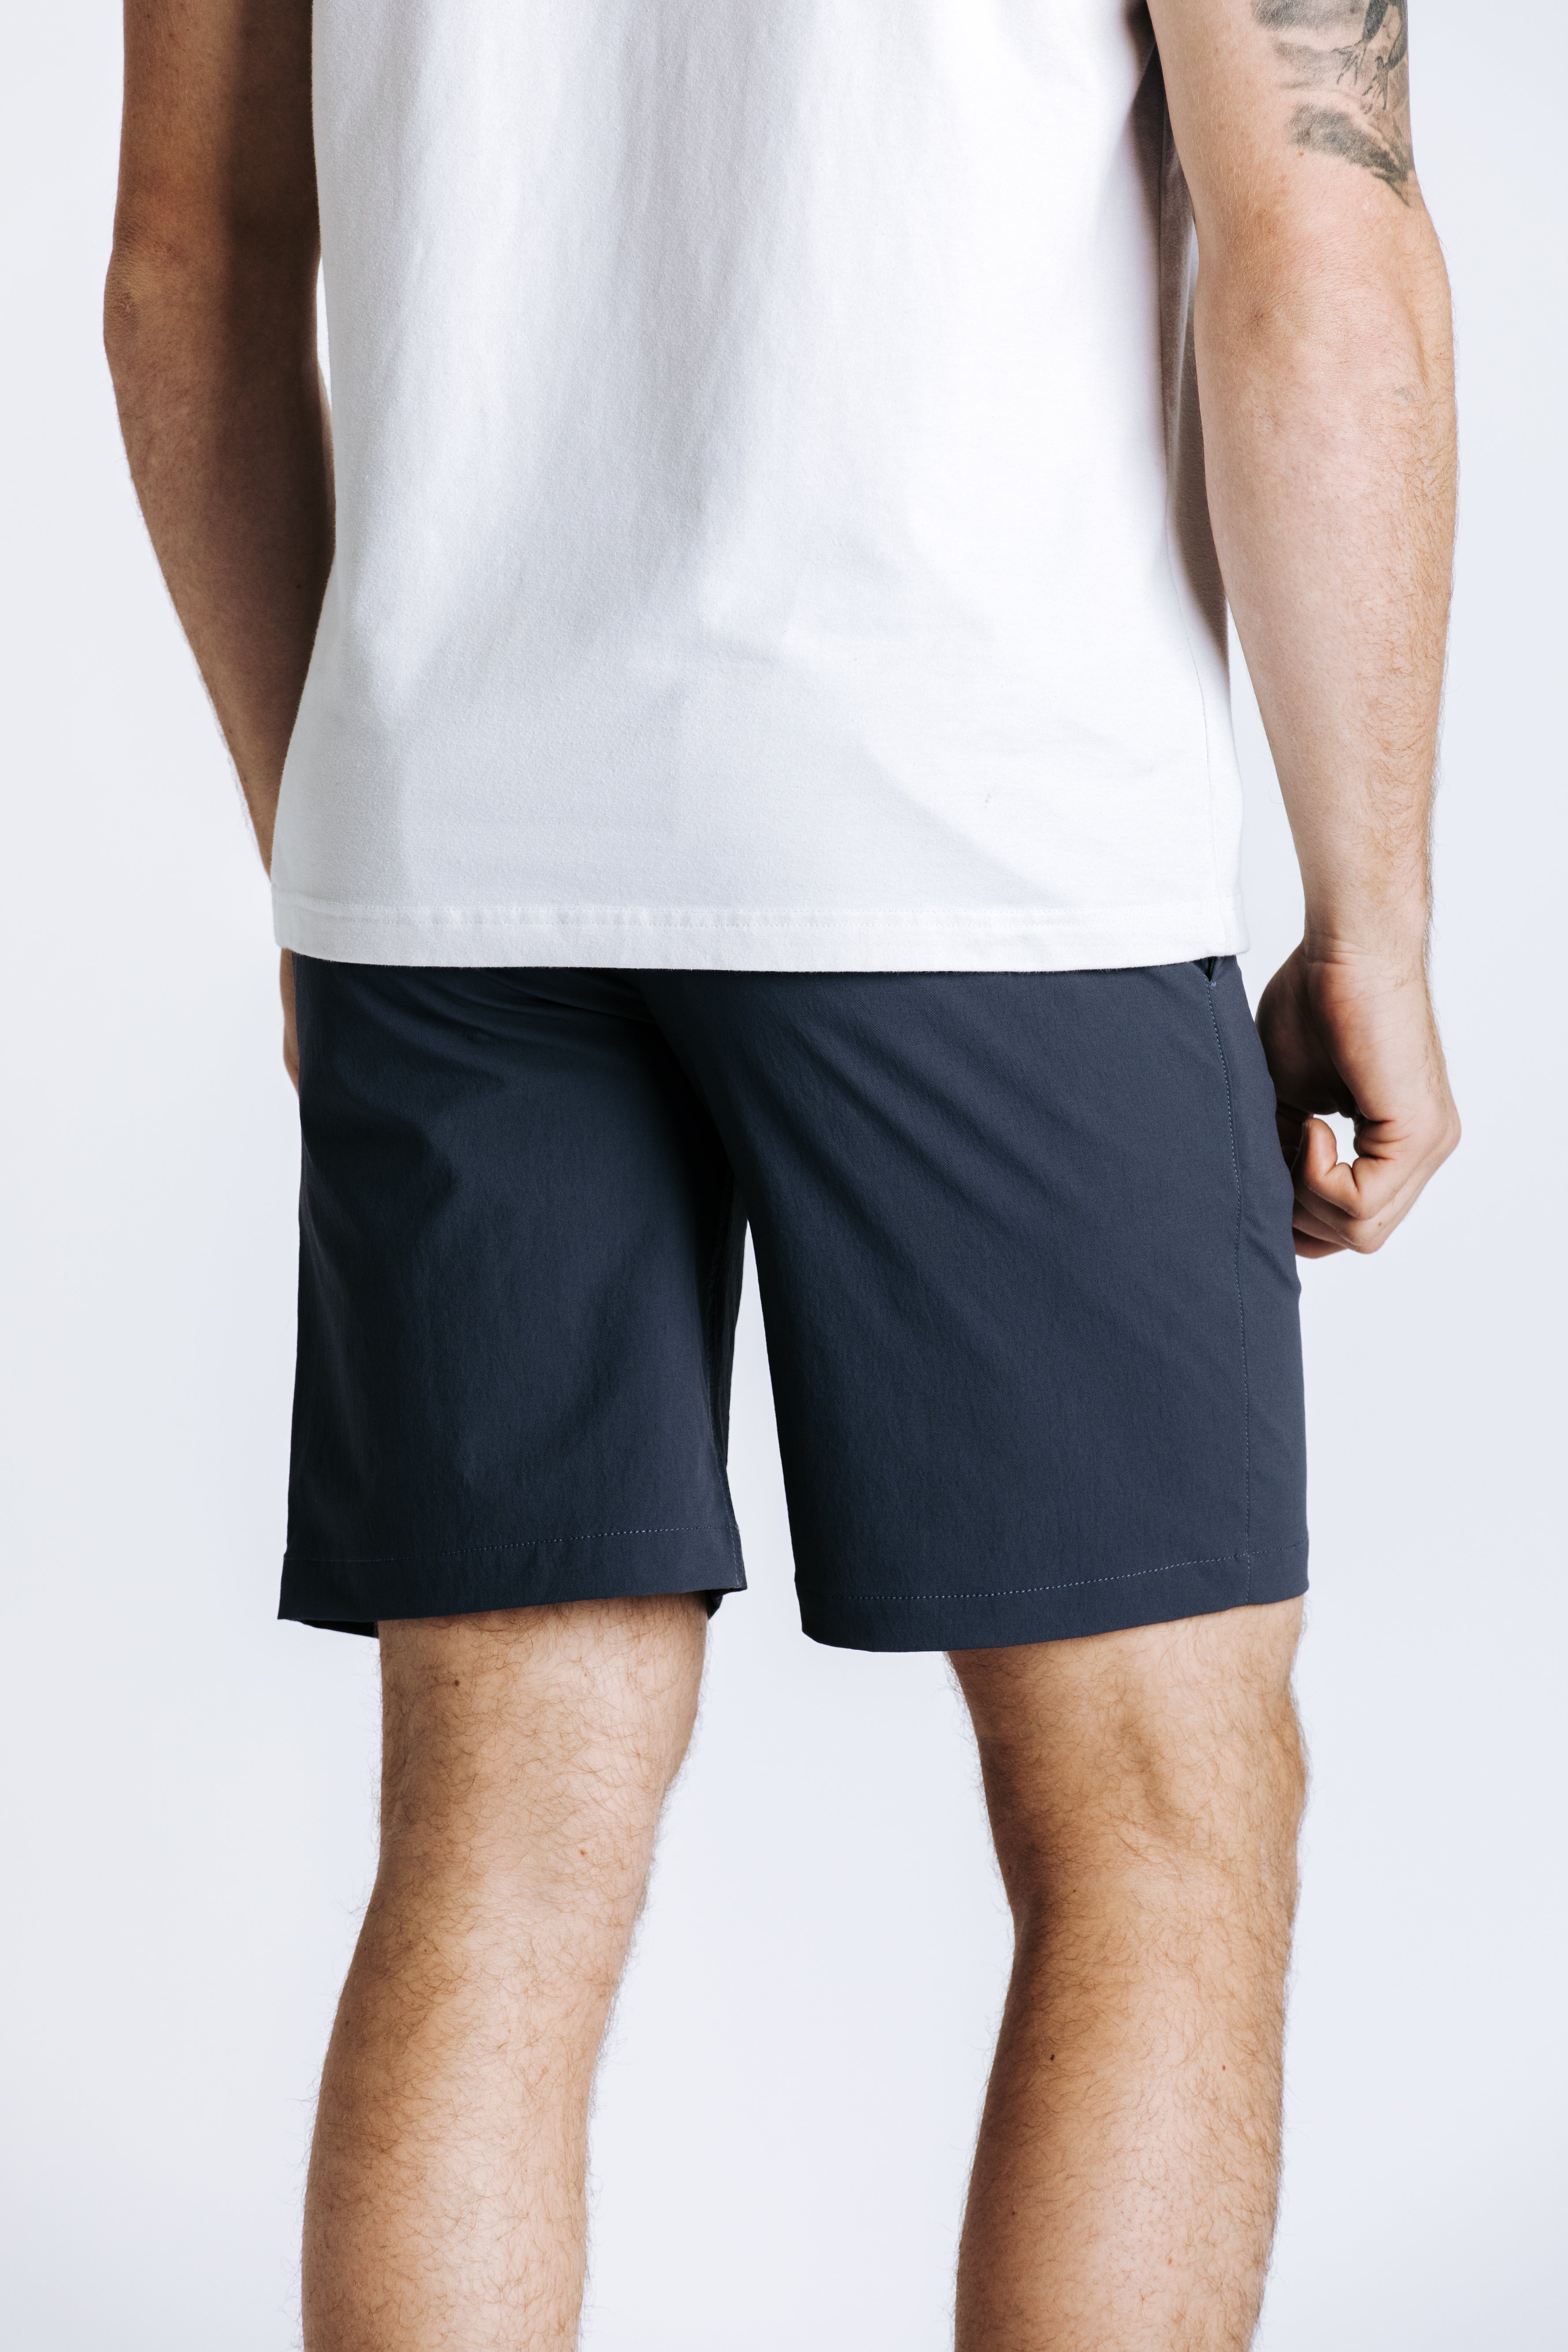 Evolution Shorts - Navy
